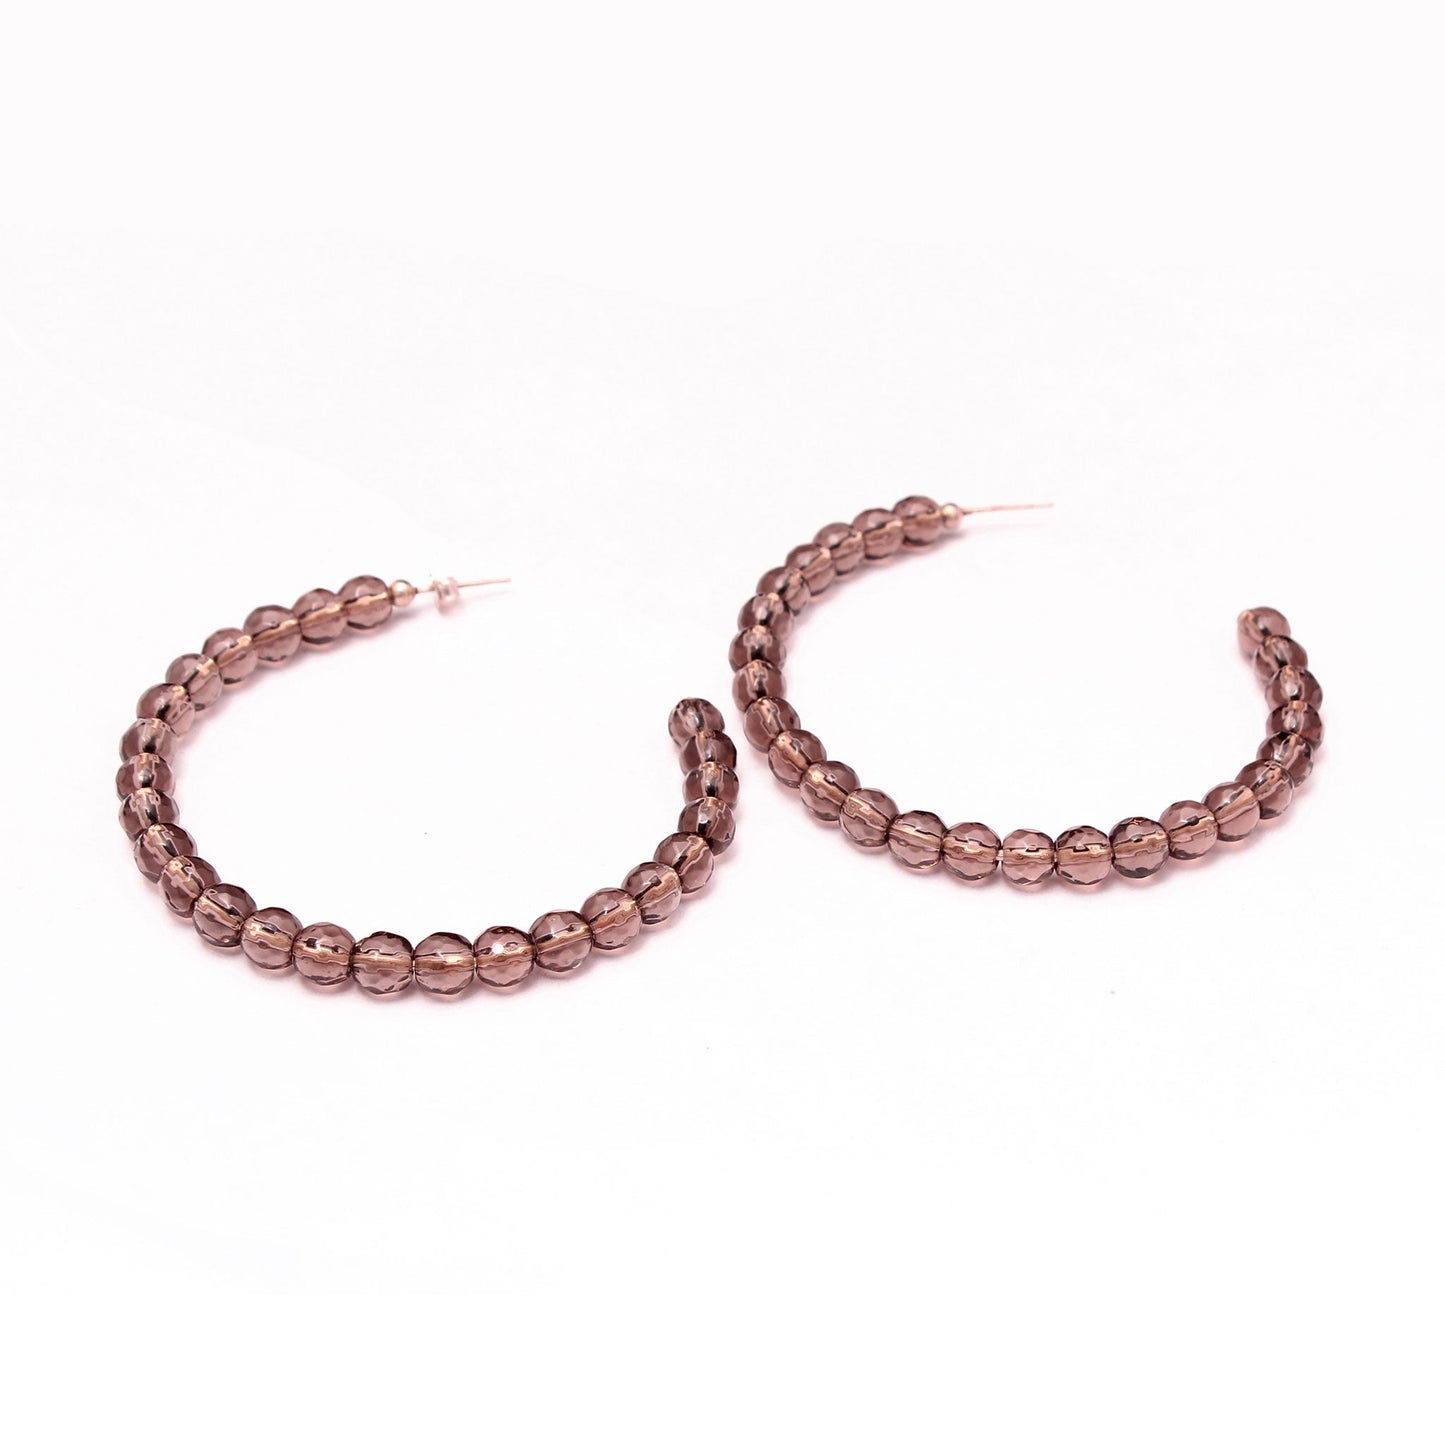 Smoky Quartz Long Hoop Stud Earrings | Classy Brown Earrings Collection GemsRush